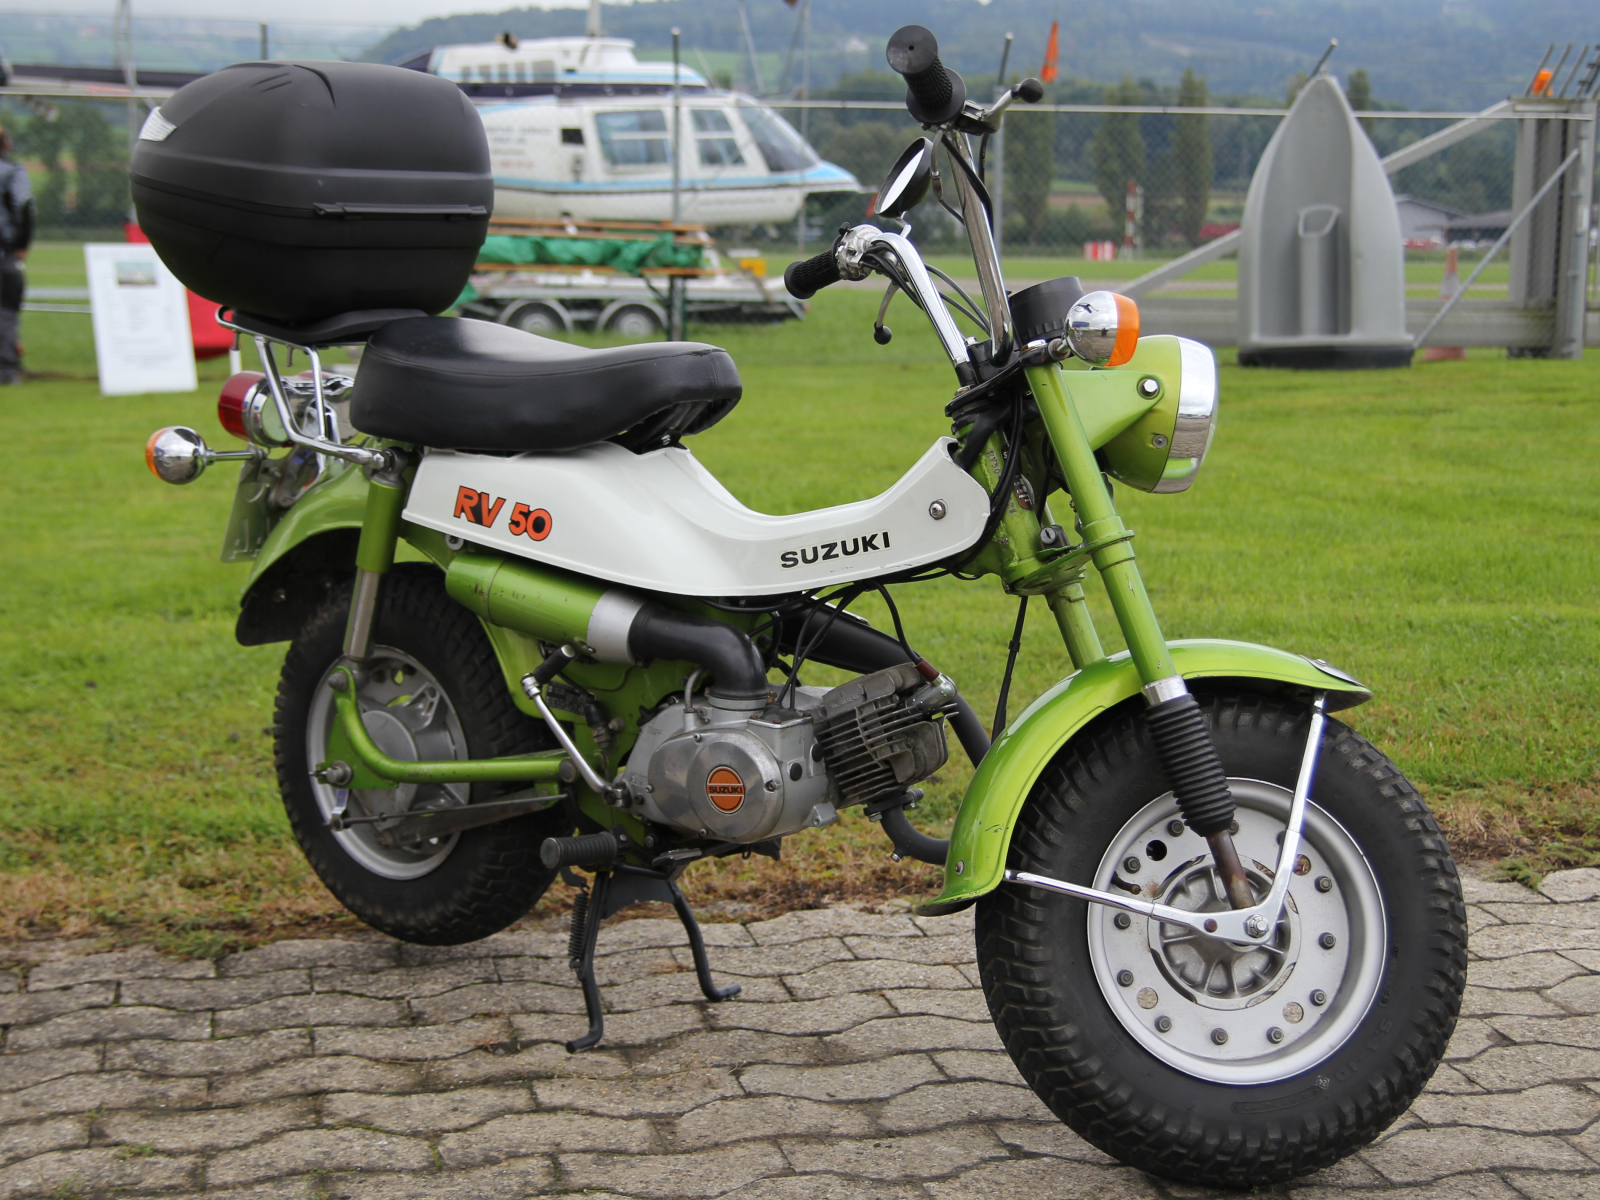 Suzuki RV 50